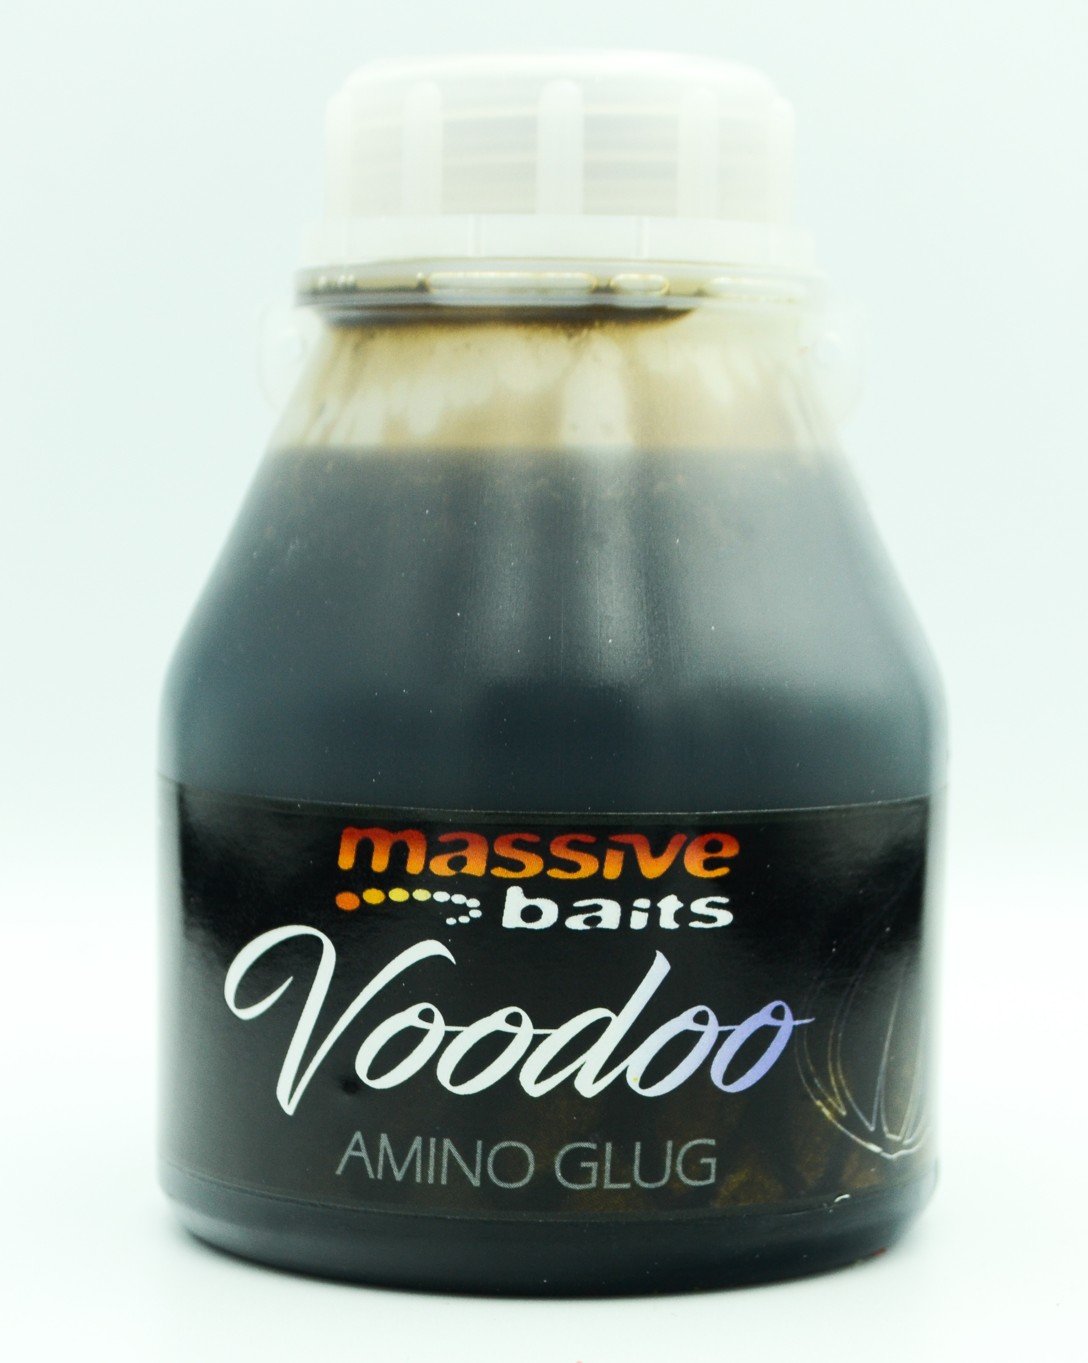 Massive Baits – Voodoo Amino Glug